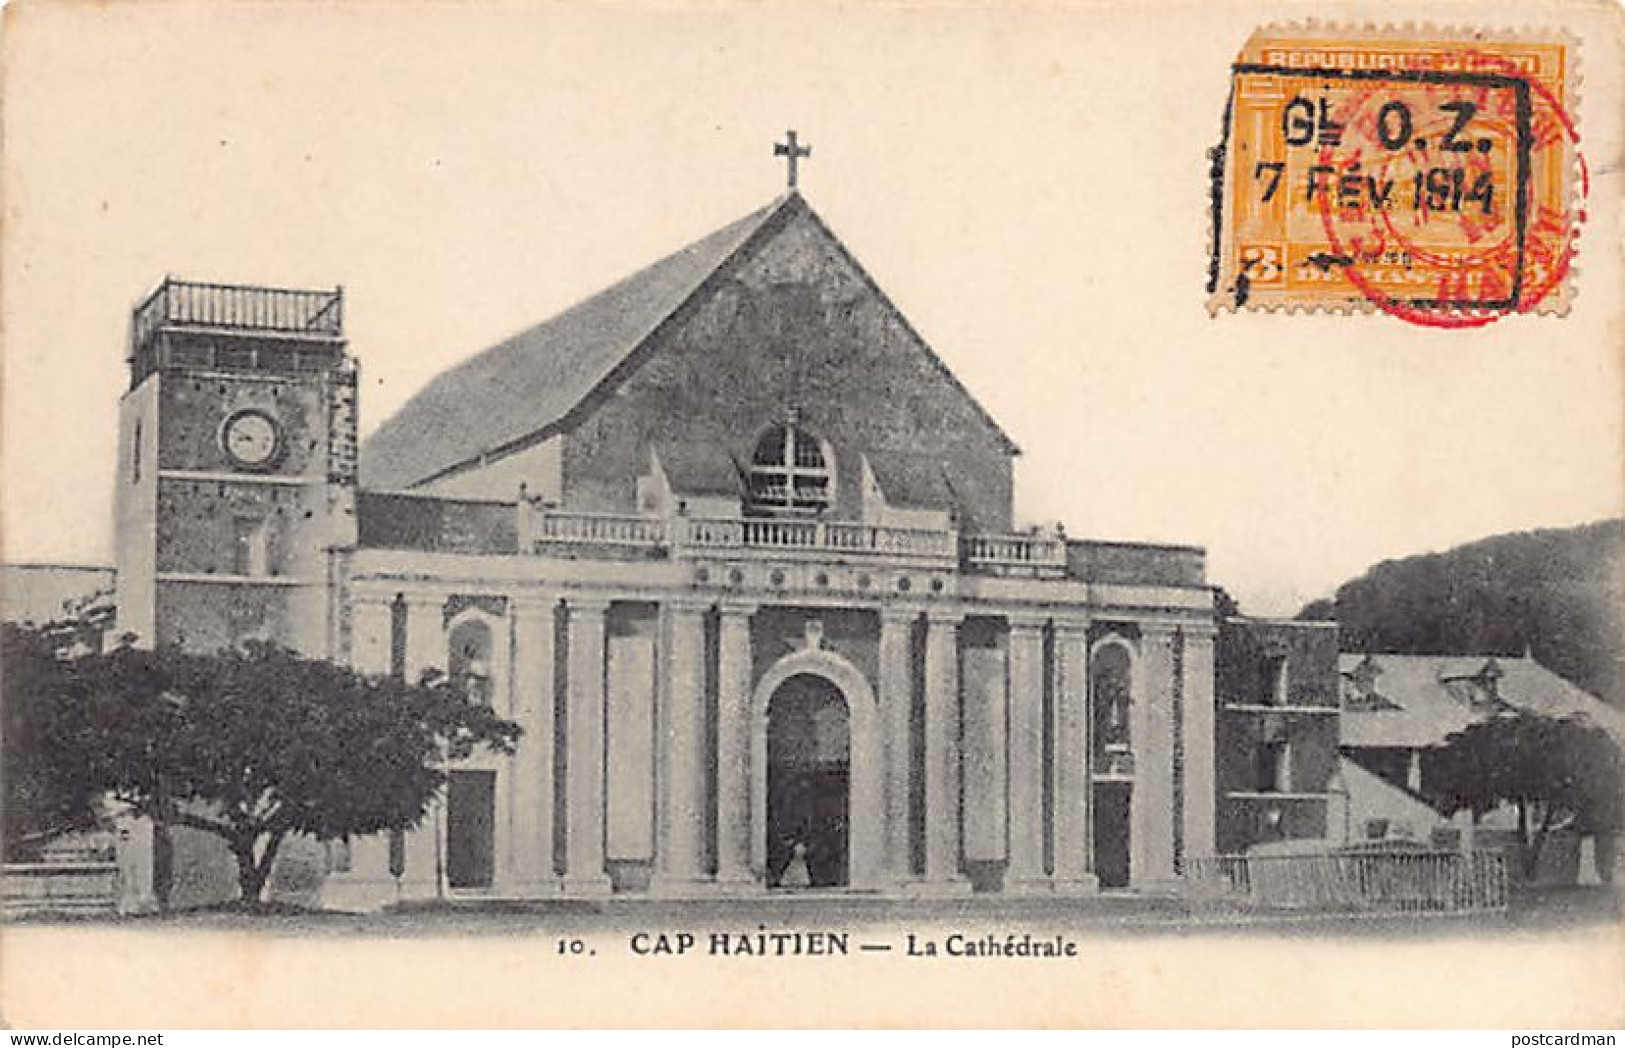 Haiti - CAP HAÏTIEN - La Cathédrale - Publ. Unknown 10 - Haití